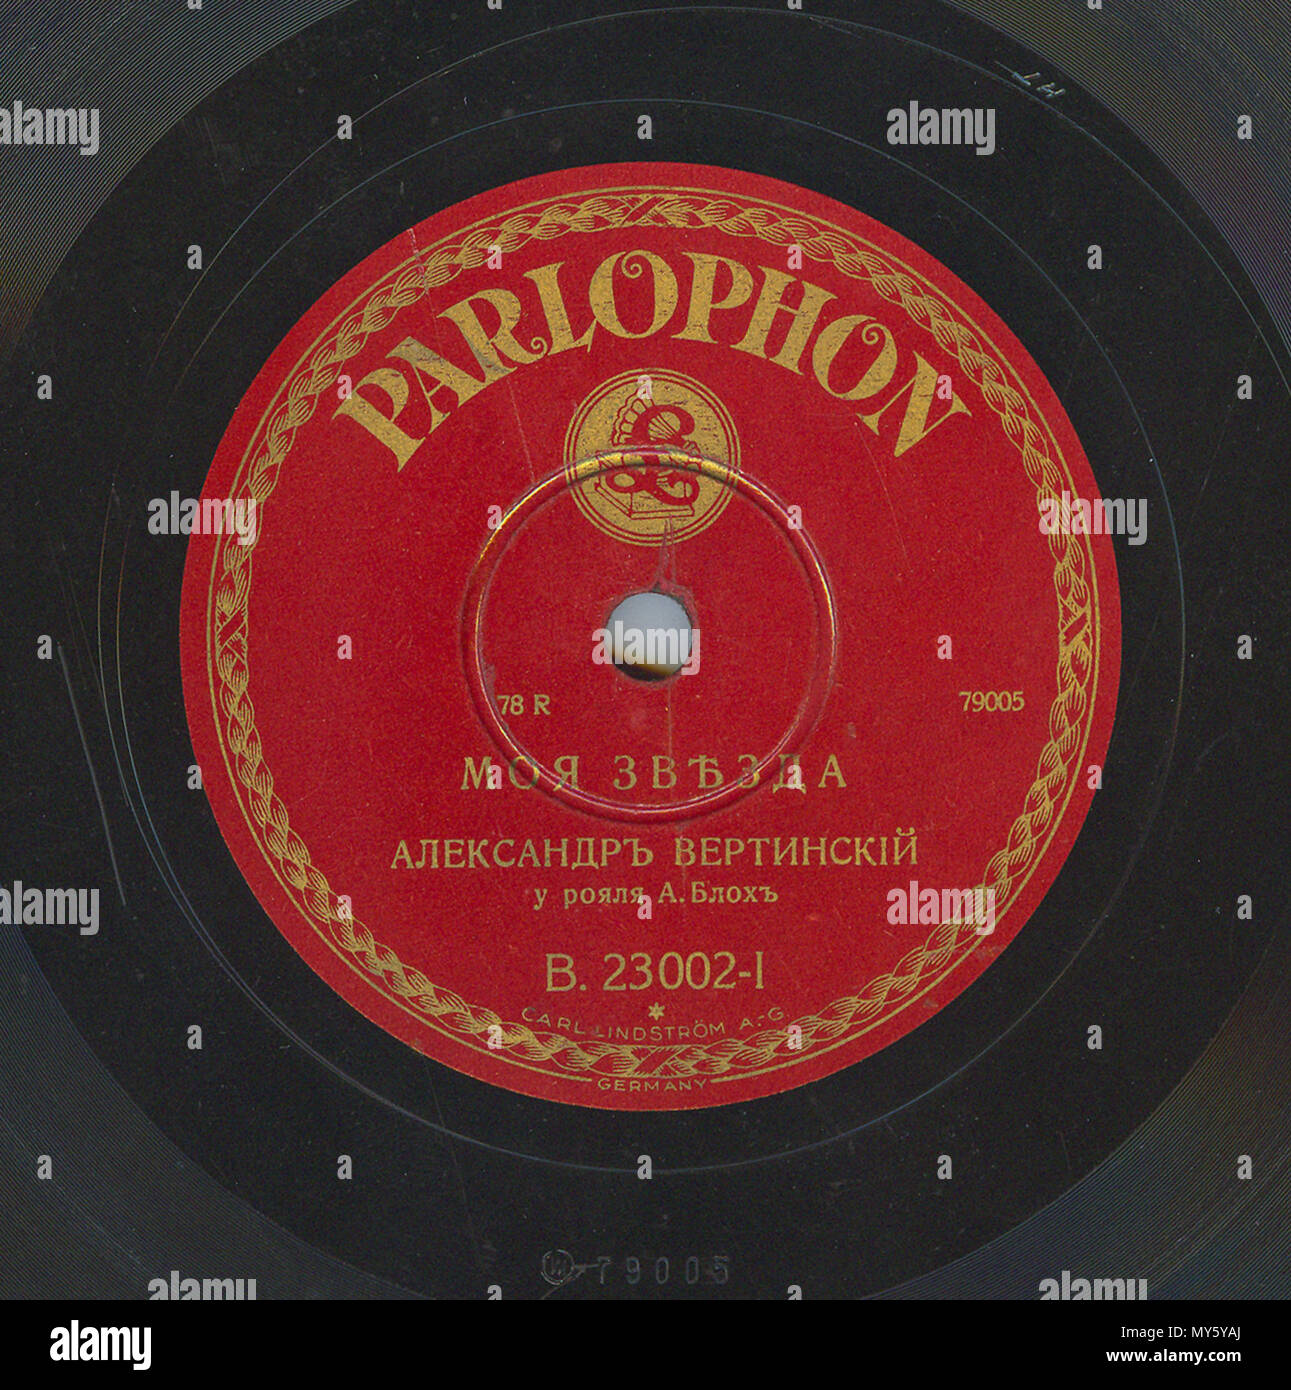 . Englisch: Vertinsky Parlophone B.23002 01. 6. April 2010, 12:08:13. Parlophone 548 Vertinsky Parlophone B.23002, 01. Stockfoto